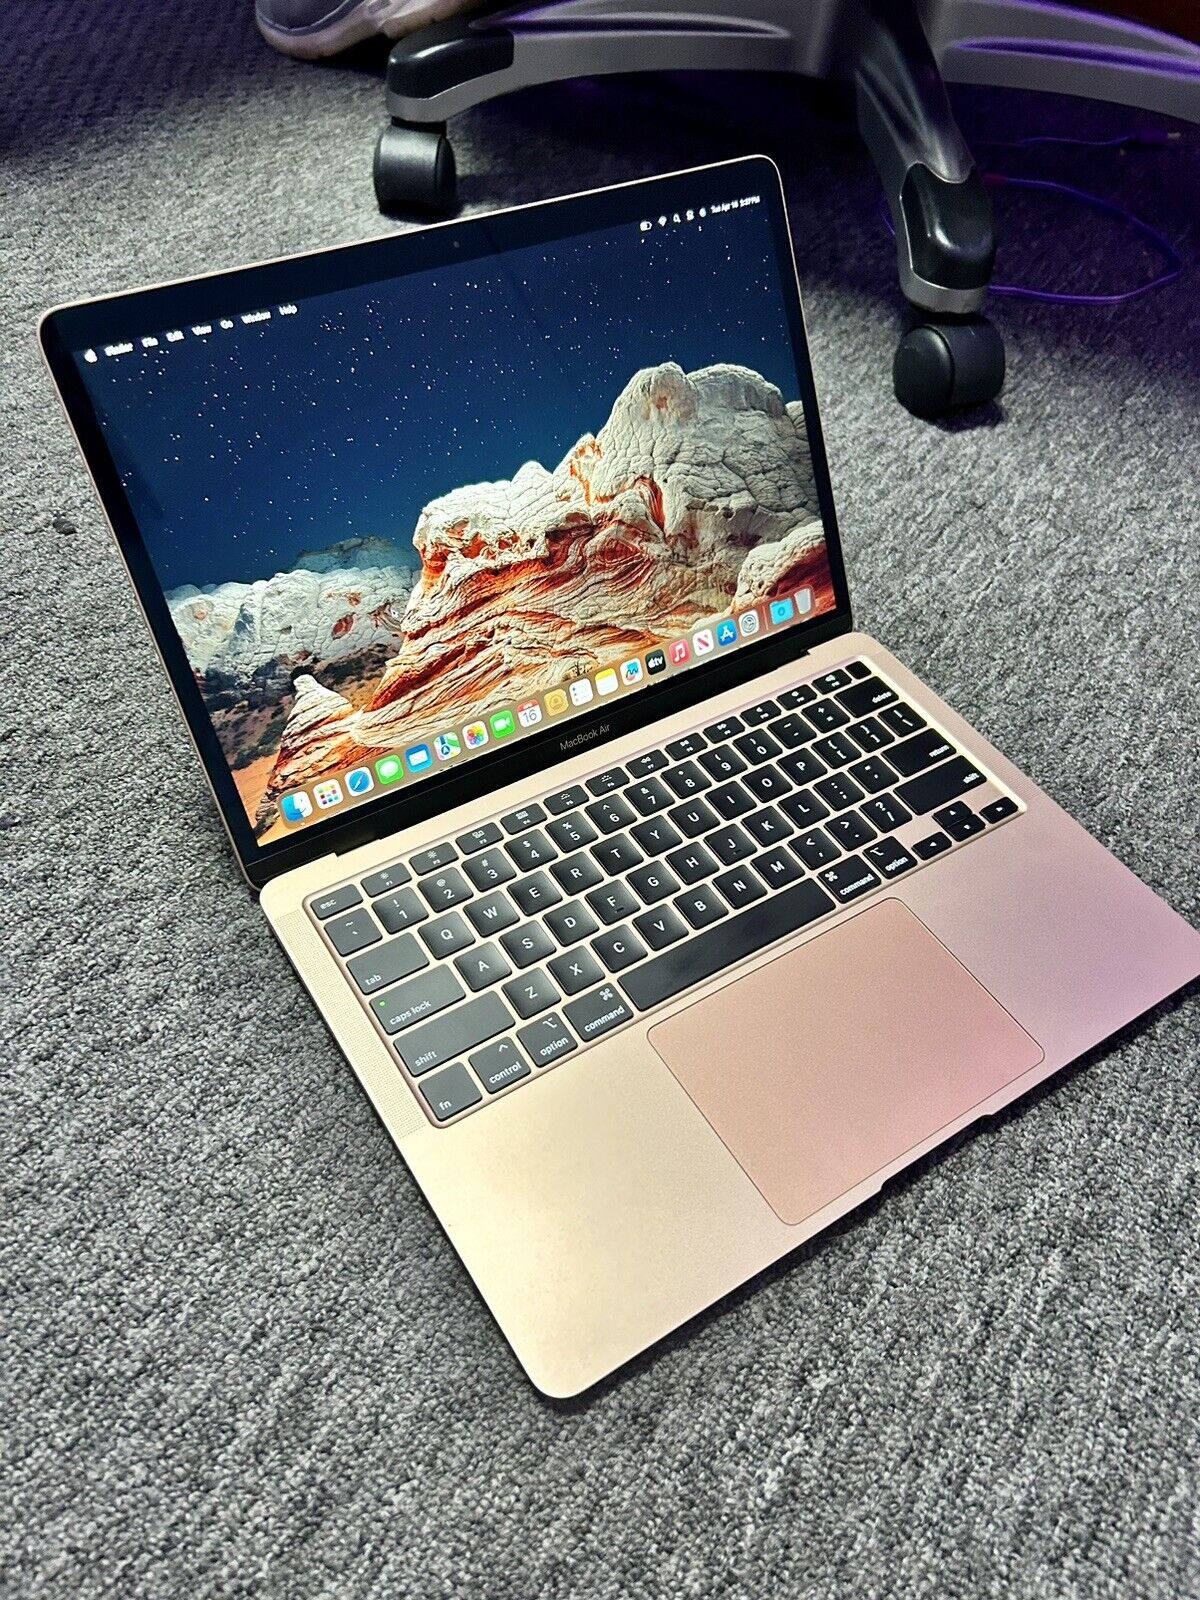 2020 MacBook Air - Core i3 10th Gen - 256GB SSD - 8GB RAM - Beautiful Rose Gold